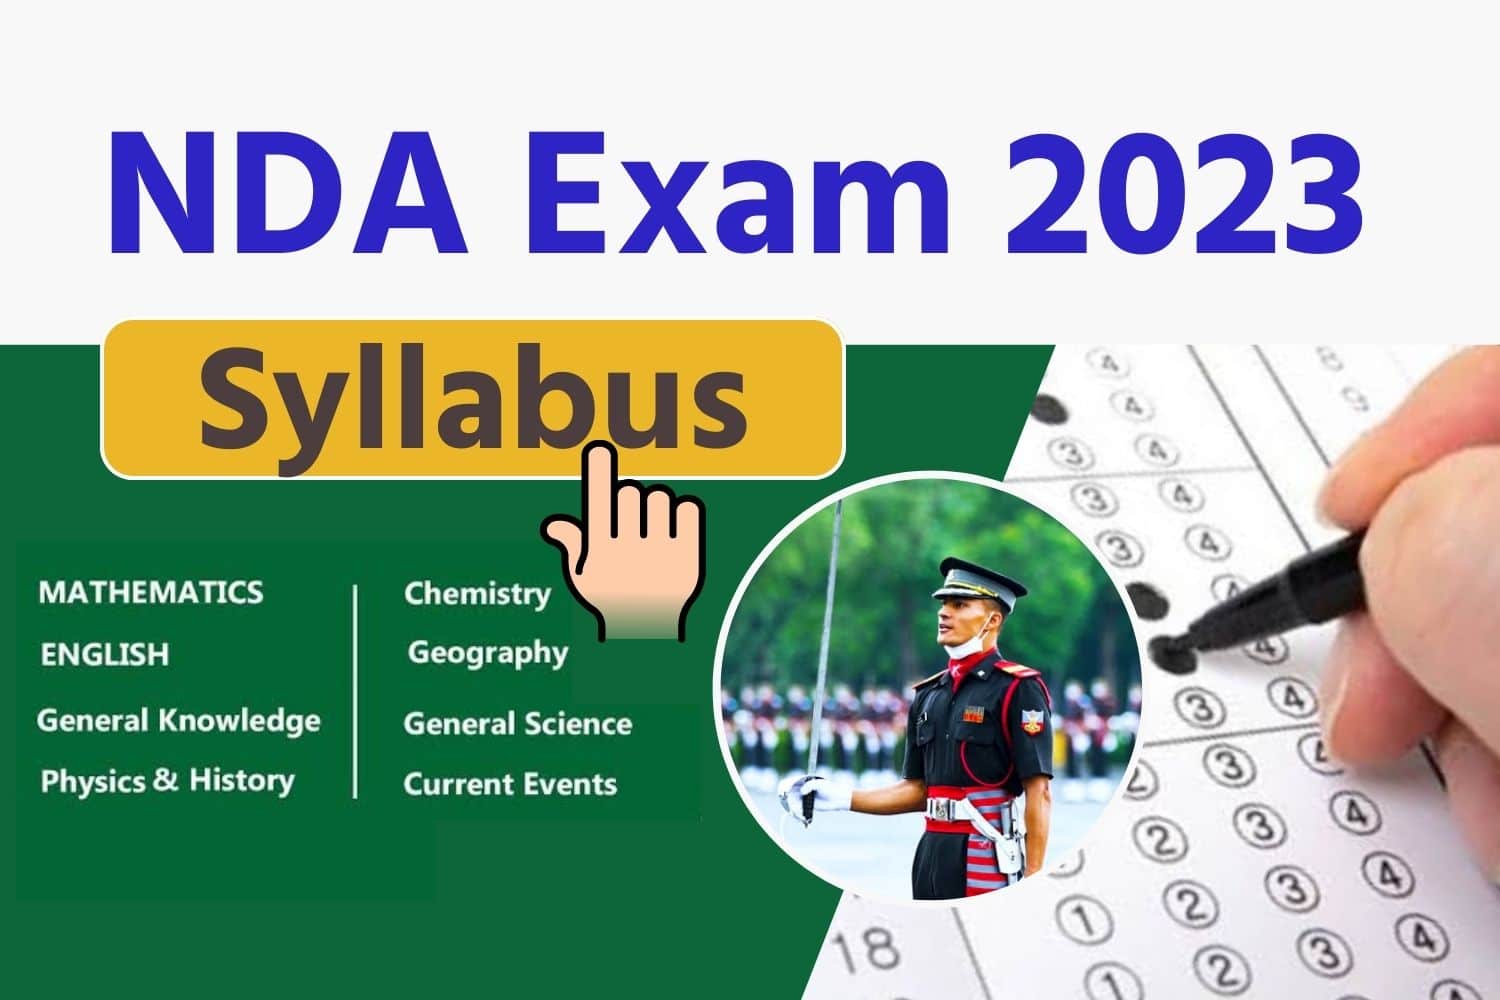 NDA Syllabus 2023 In Hindi | एनडीए के सिलेबस और परीक्षा पैटर्न की जानकारी